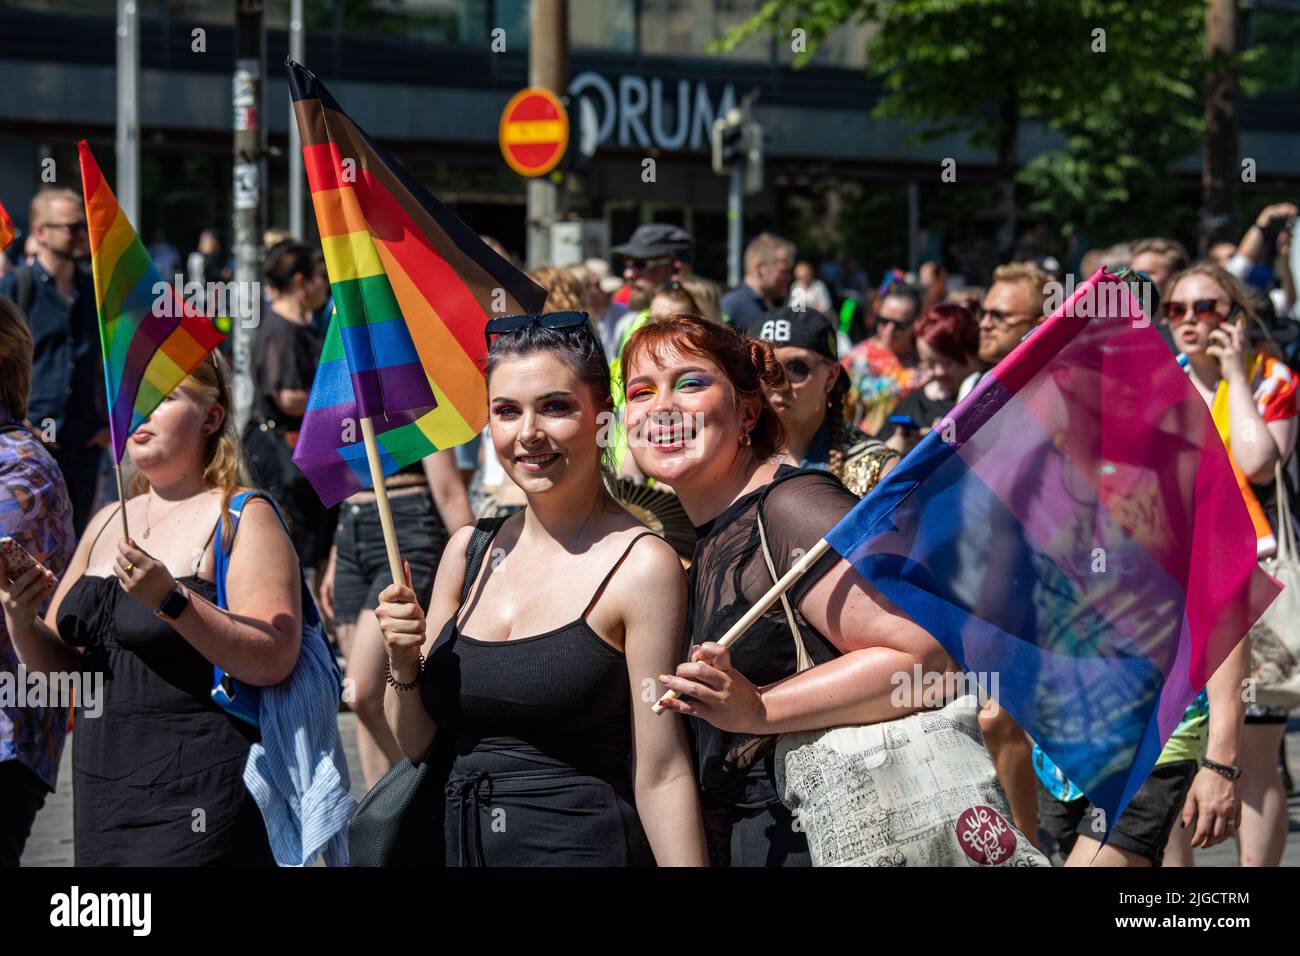 Jeunes femmes arborant des drapeaux de fierté Philadelpia et bisexuel lors de la parade Helsinki Pride 2022 à Mannerheimintie, Helsinki, Finlande Banque D'Images